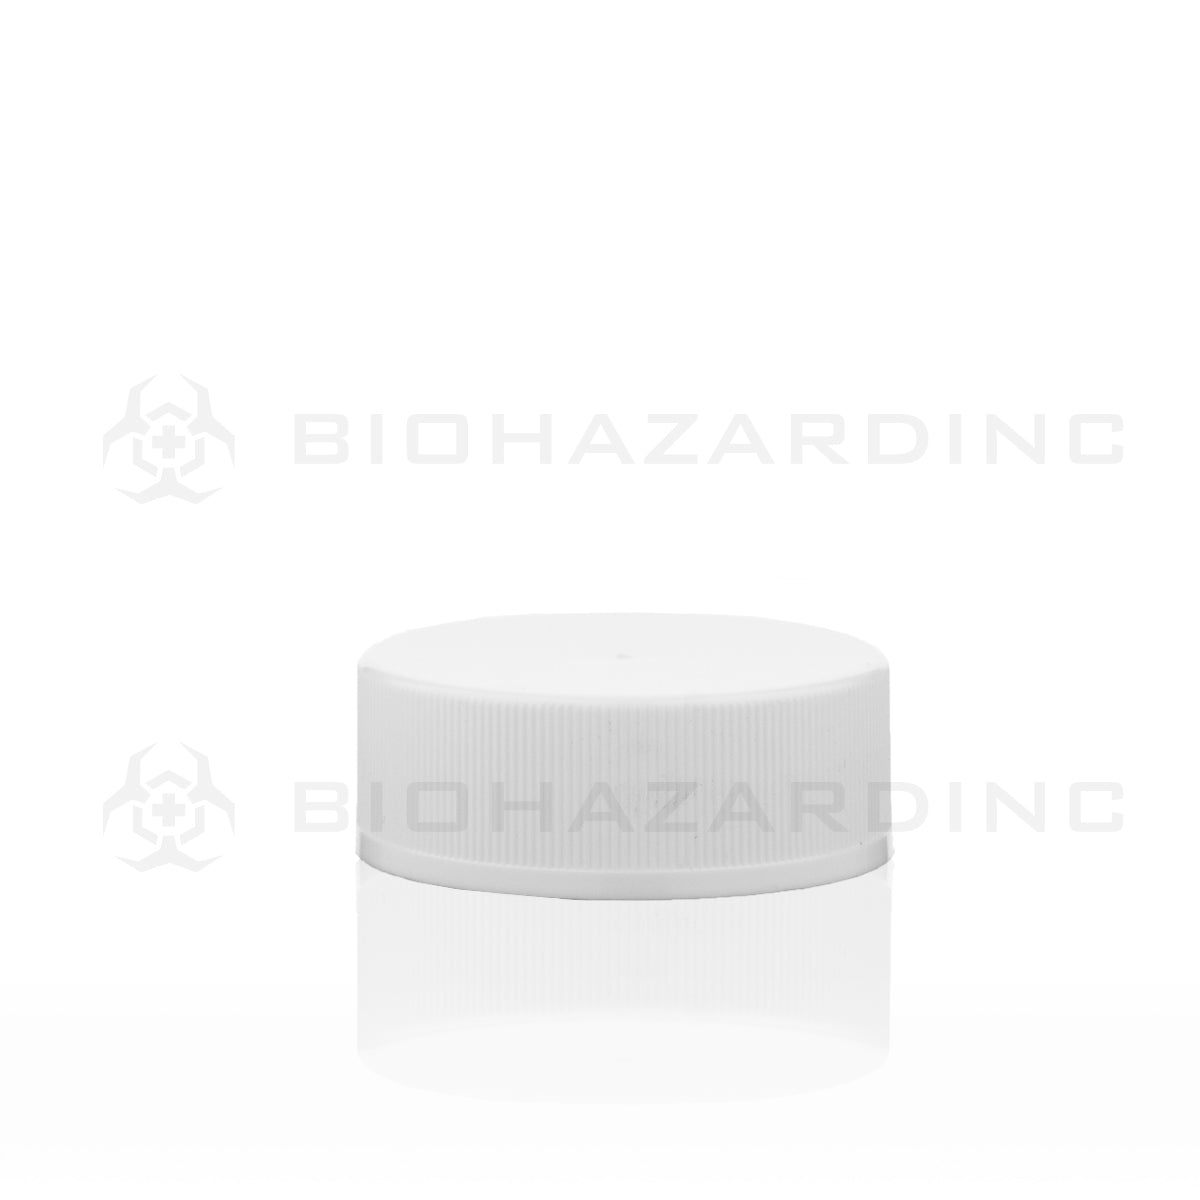 Child Resistant | Plastic Caps | 38mm - White - 80 Count Child Resistant Cap Biohazard Inc   